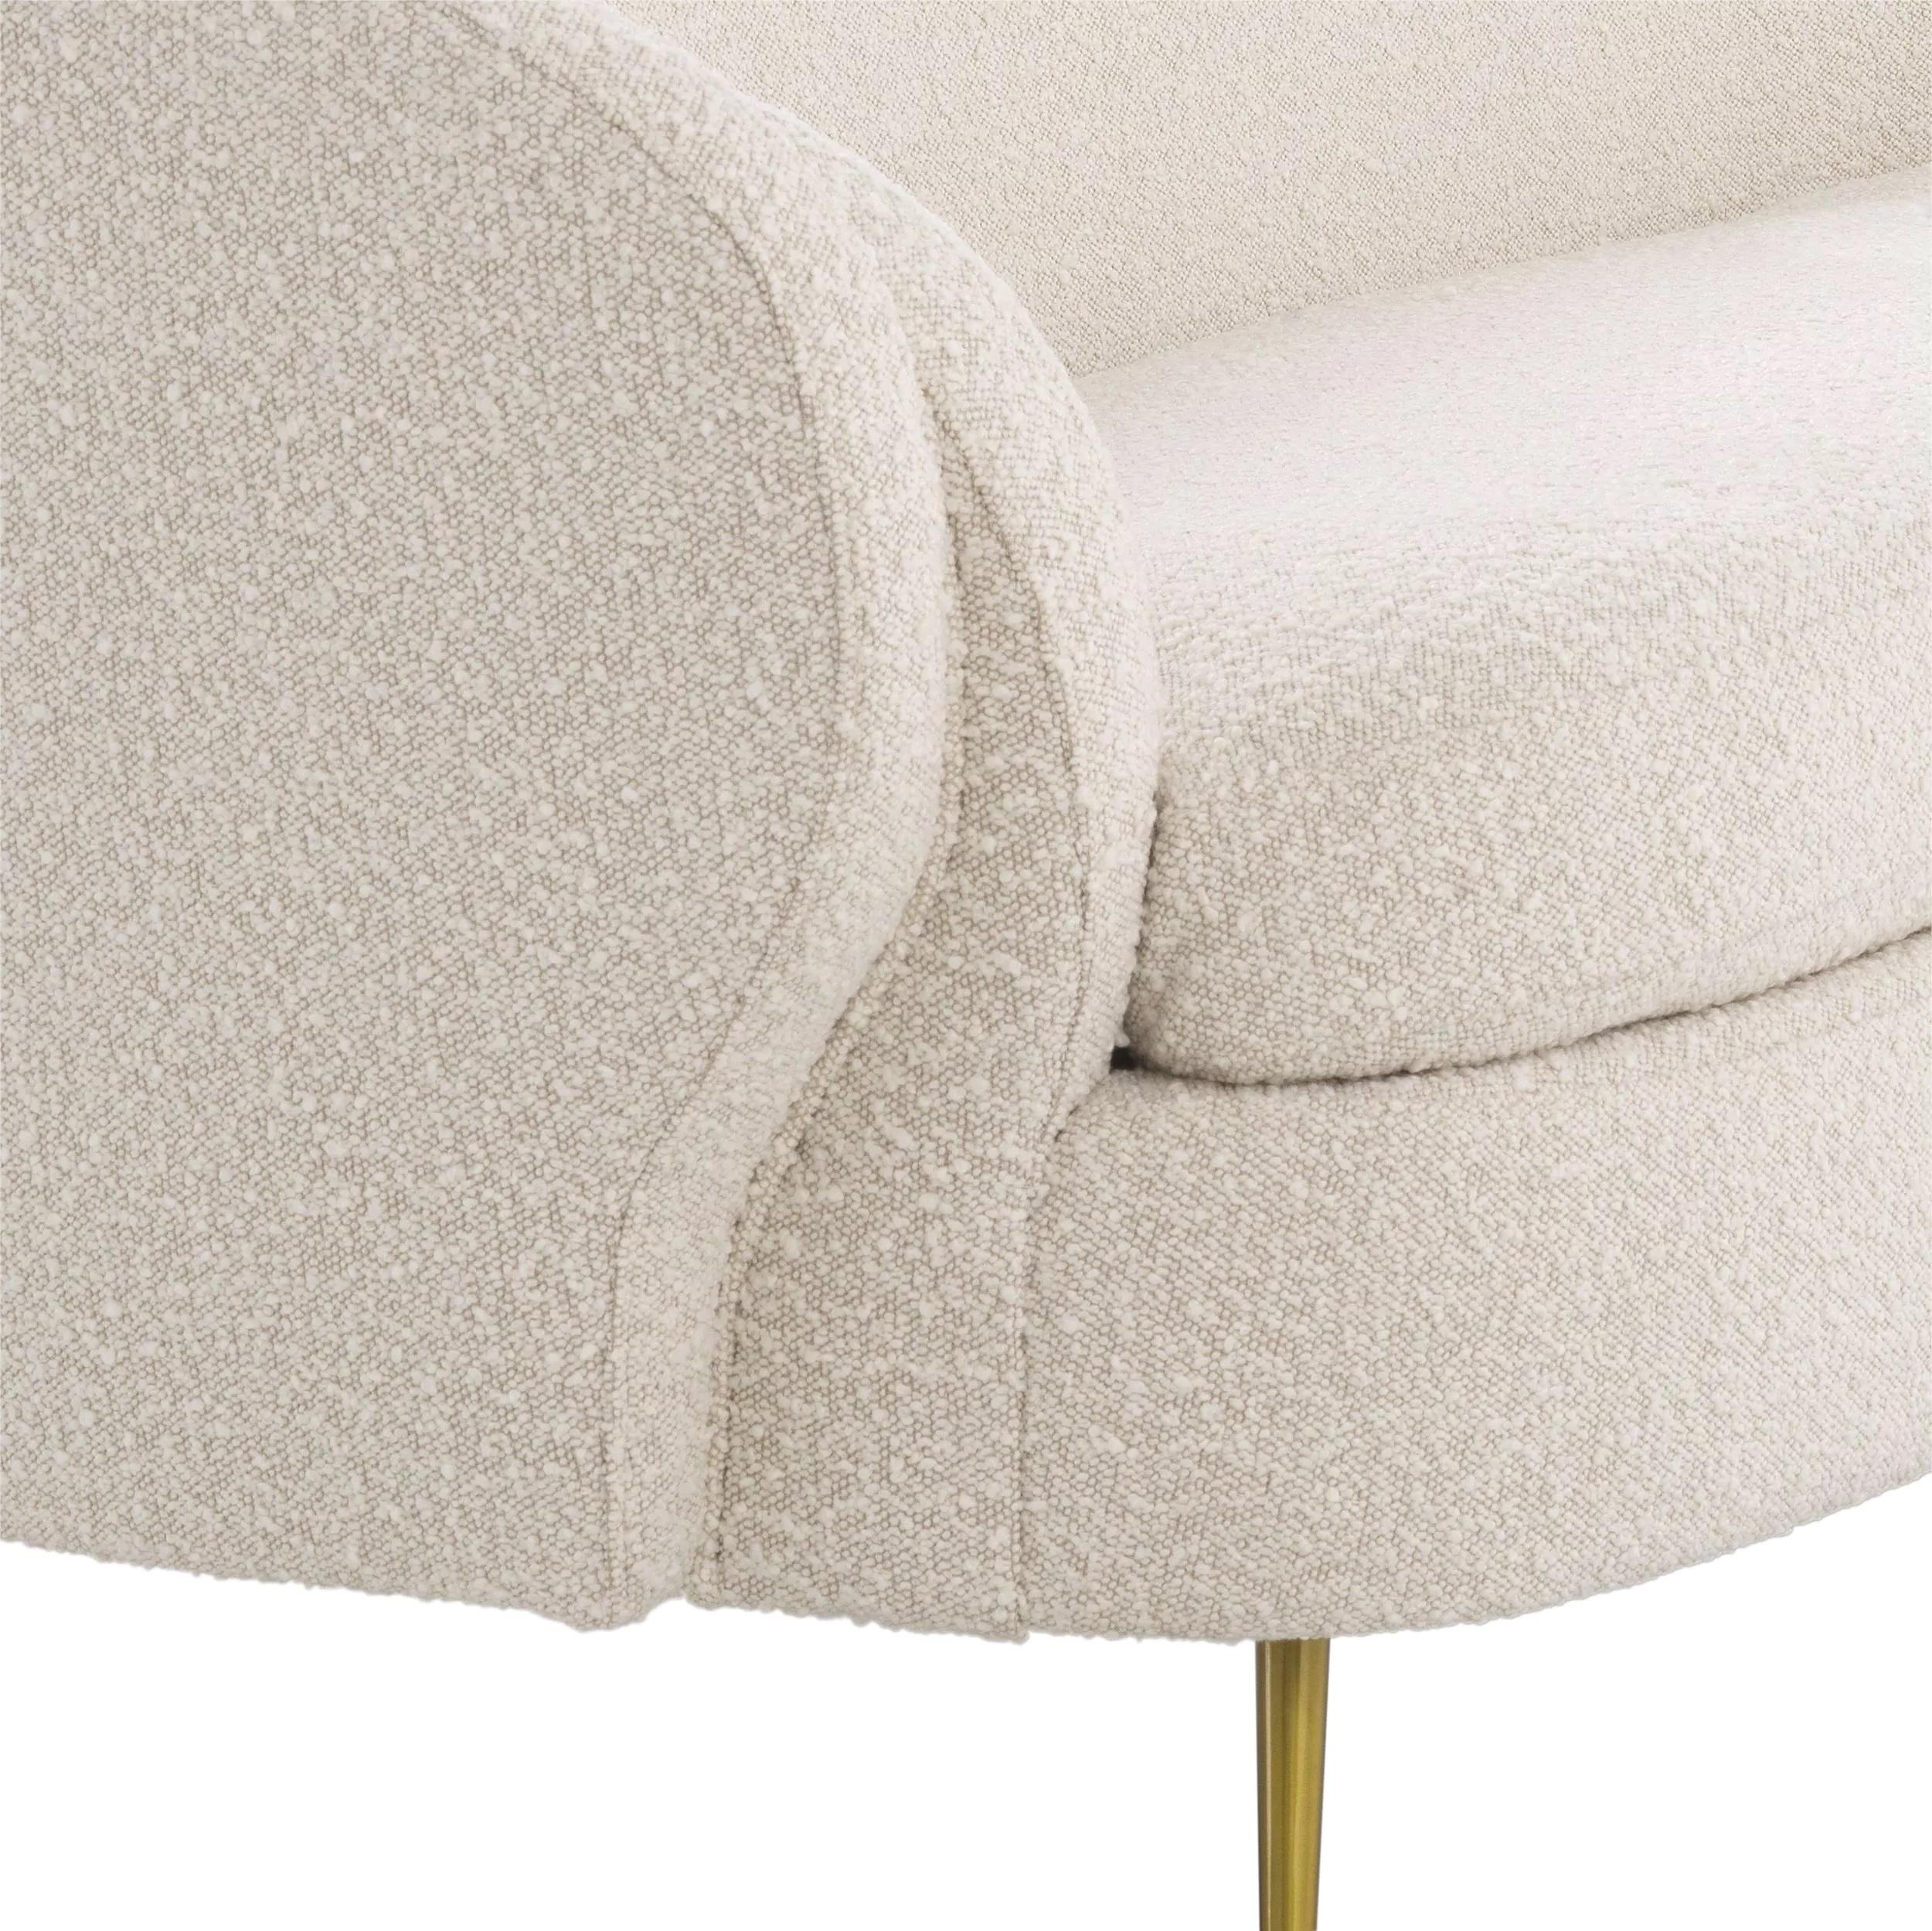 Canapé accueillant aux formes arrondies dans un style Design/One italien des années 1950 avec tissu bouclé beige et pieds finis en laiton.